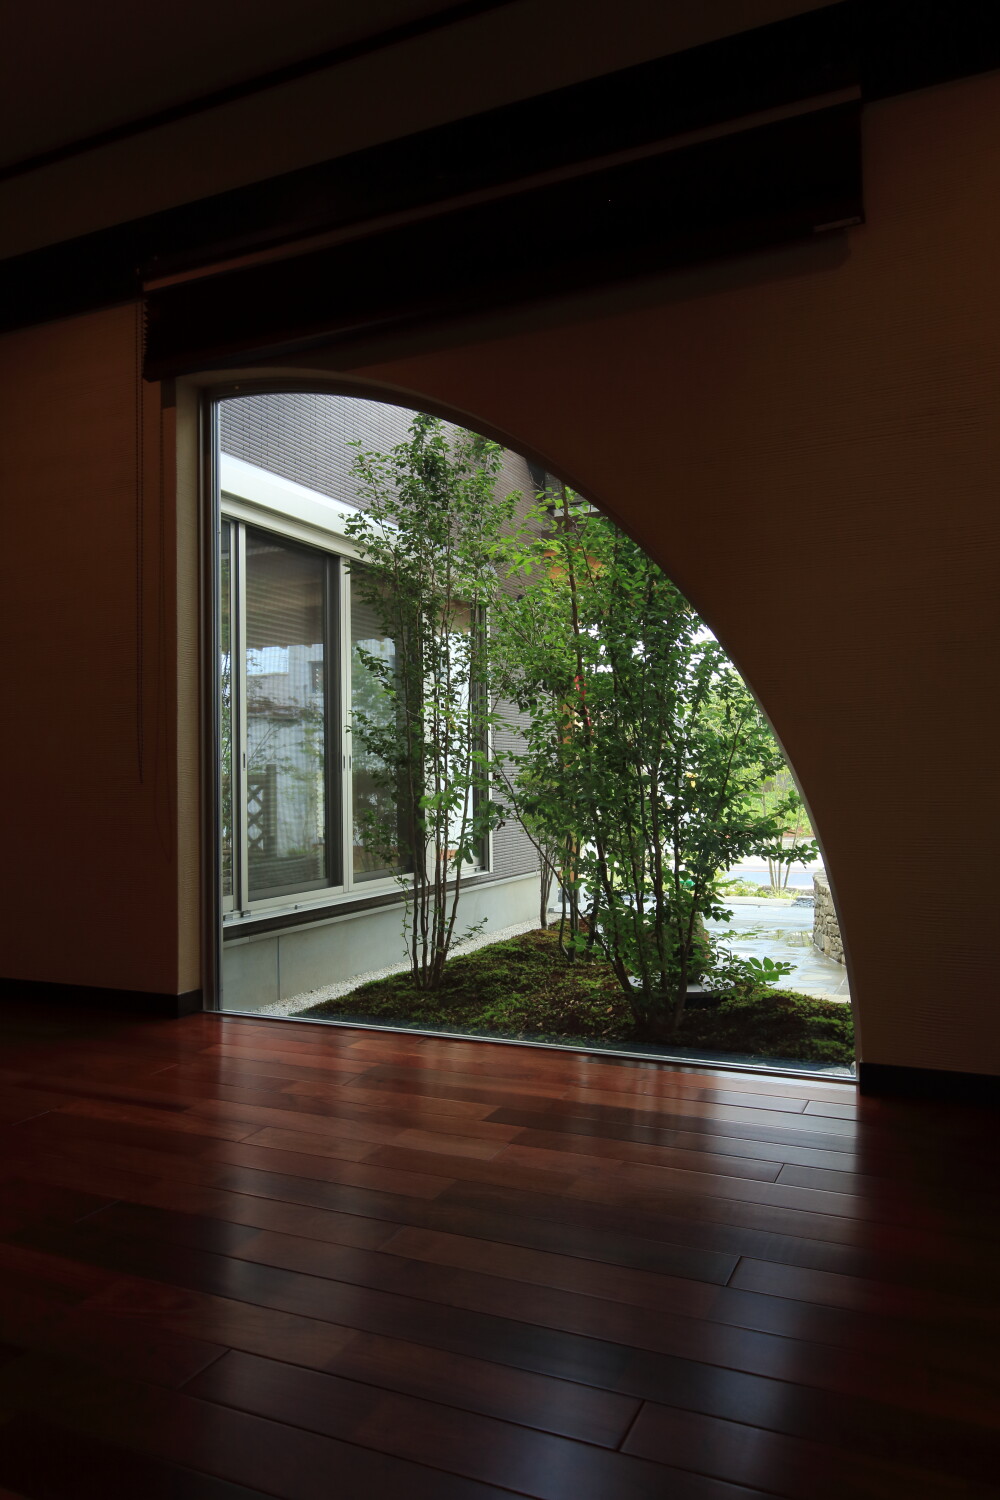 室内の広い廊下から中庭を眺める為の窓は扇状の形で特注のデザインを施して風景と庭の見える角度と印象をデザインしていますそれは同時に外観の印象と佇まいにも良い影響を及ぼしています